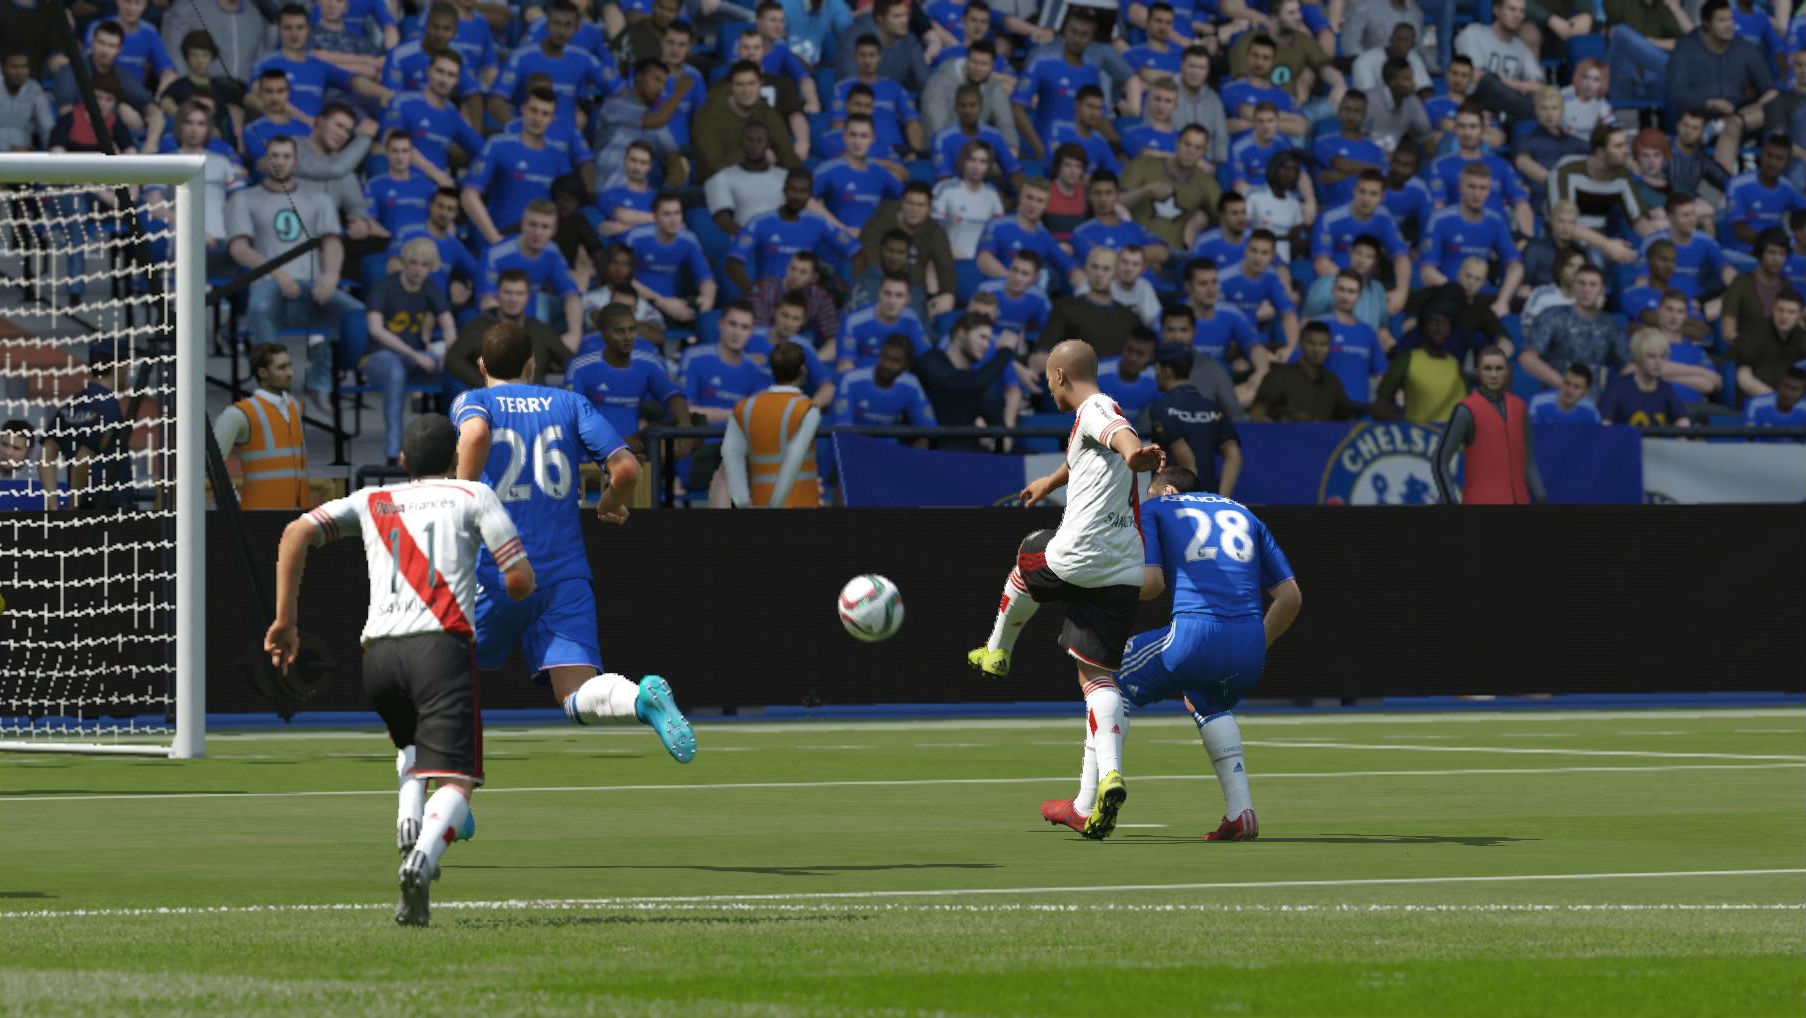 Скриншот из игры FIFA 16 под номером 28